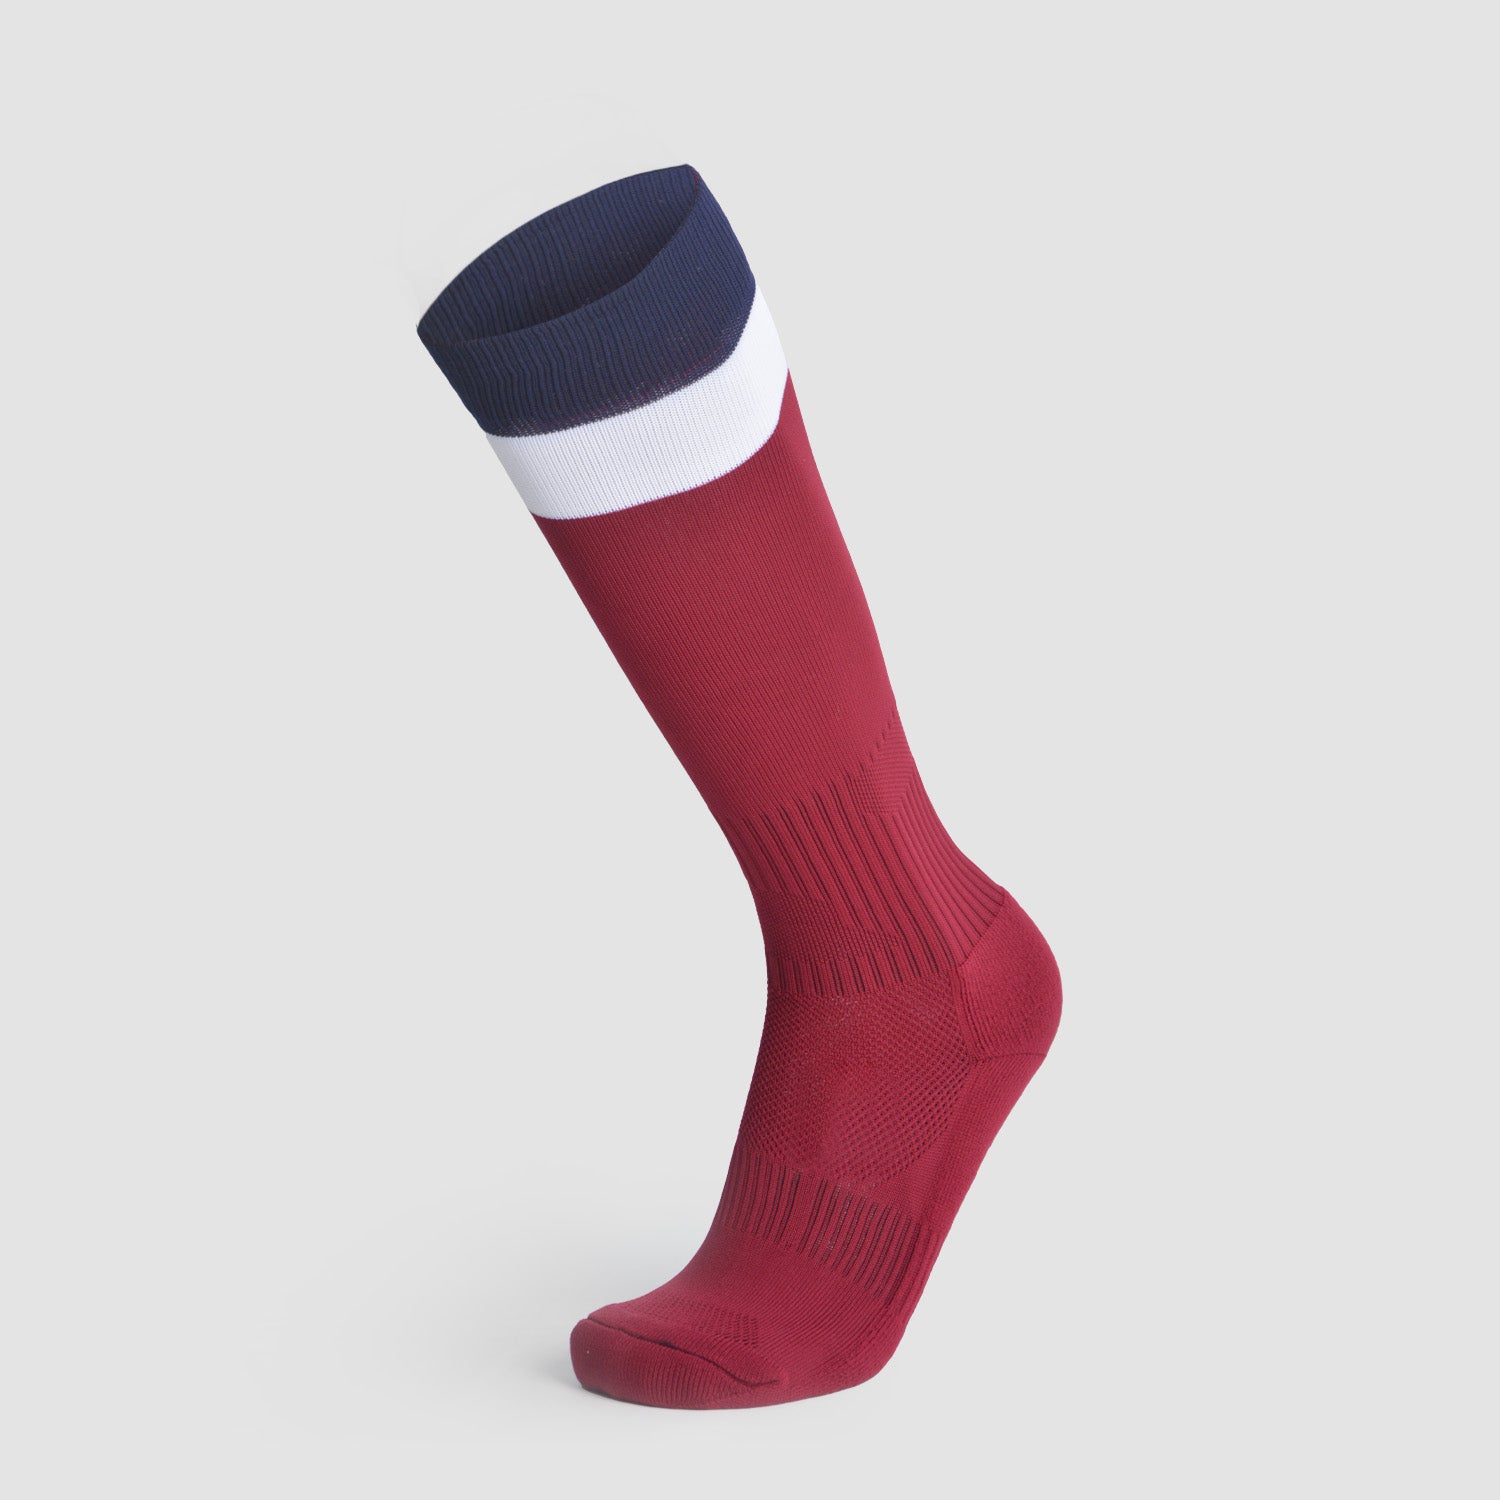 Tricolored Soccer socks